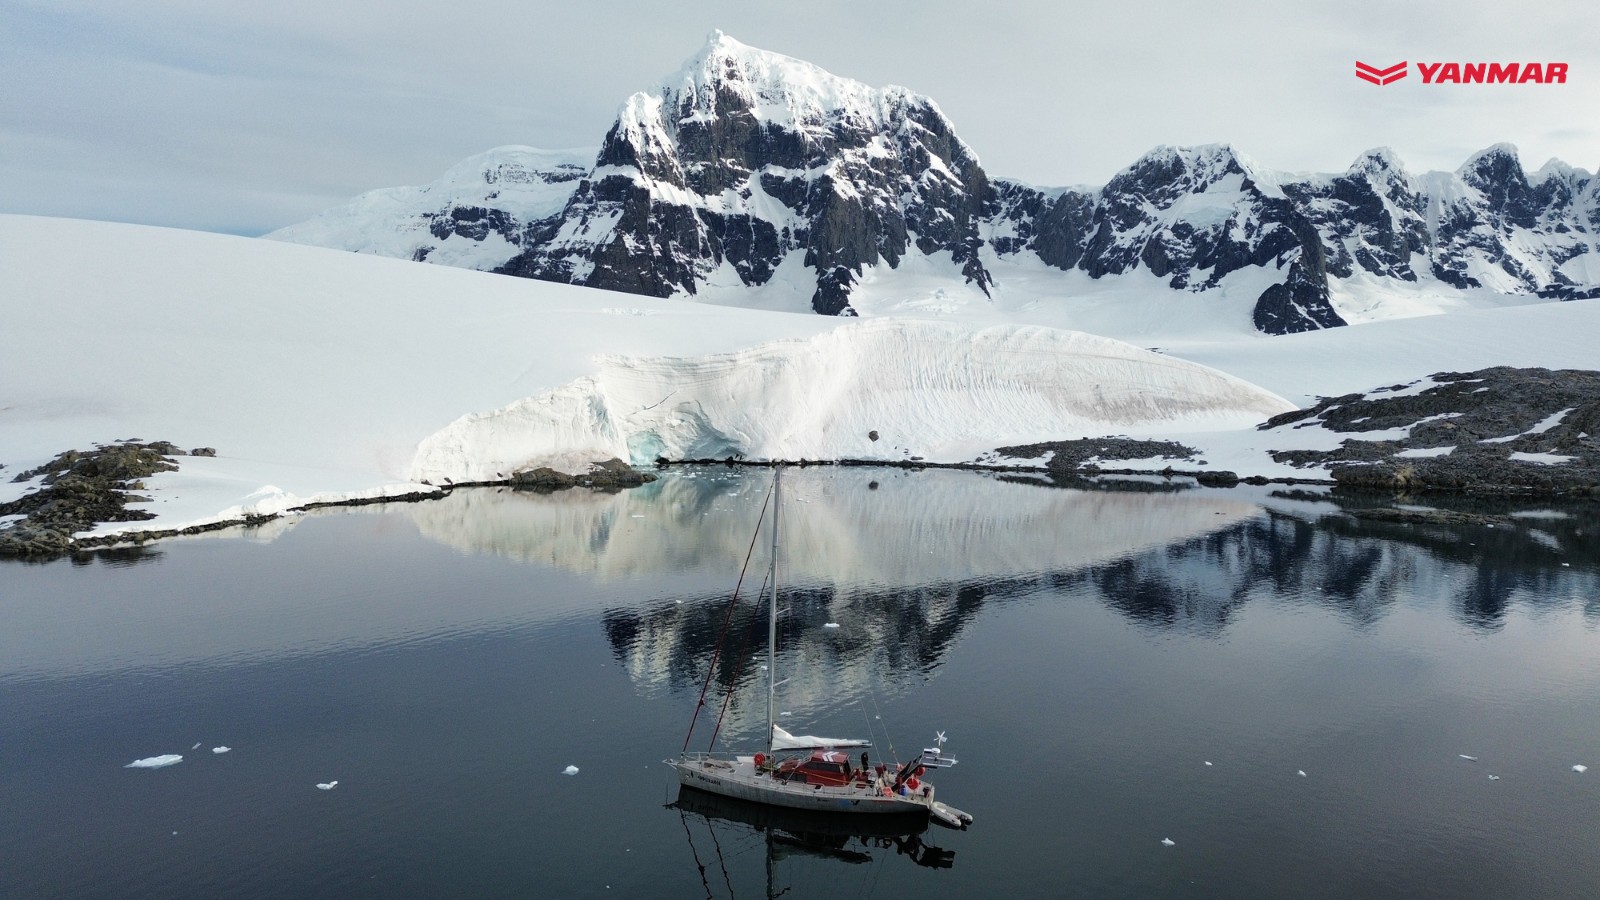 Motores YANMAR garantem segurança na navegação durante a Expedição Antártica